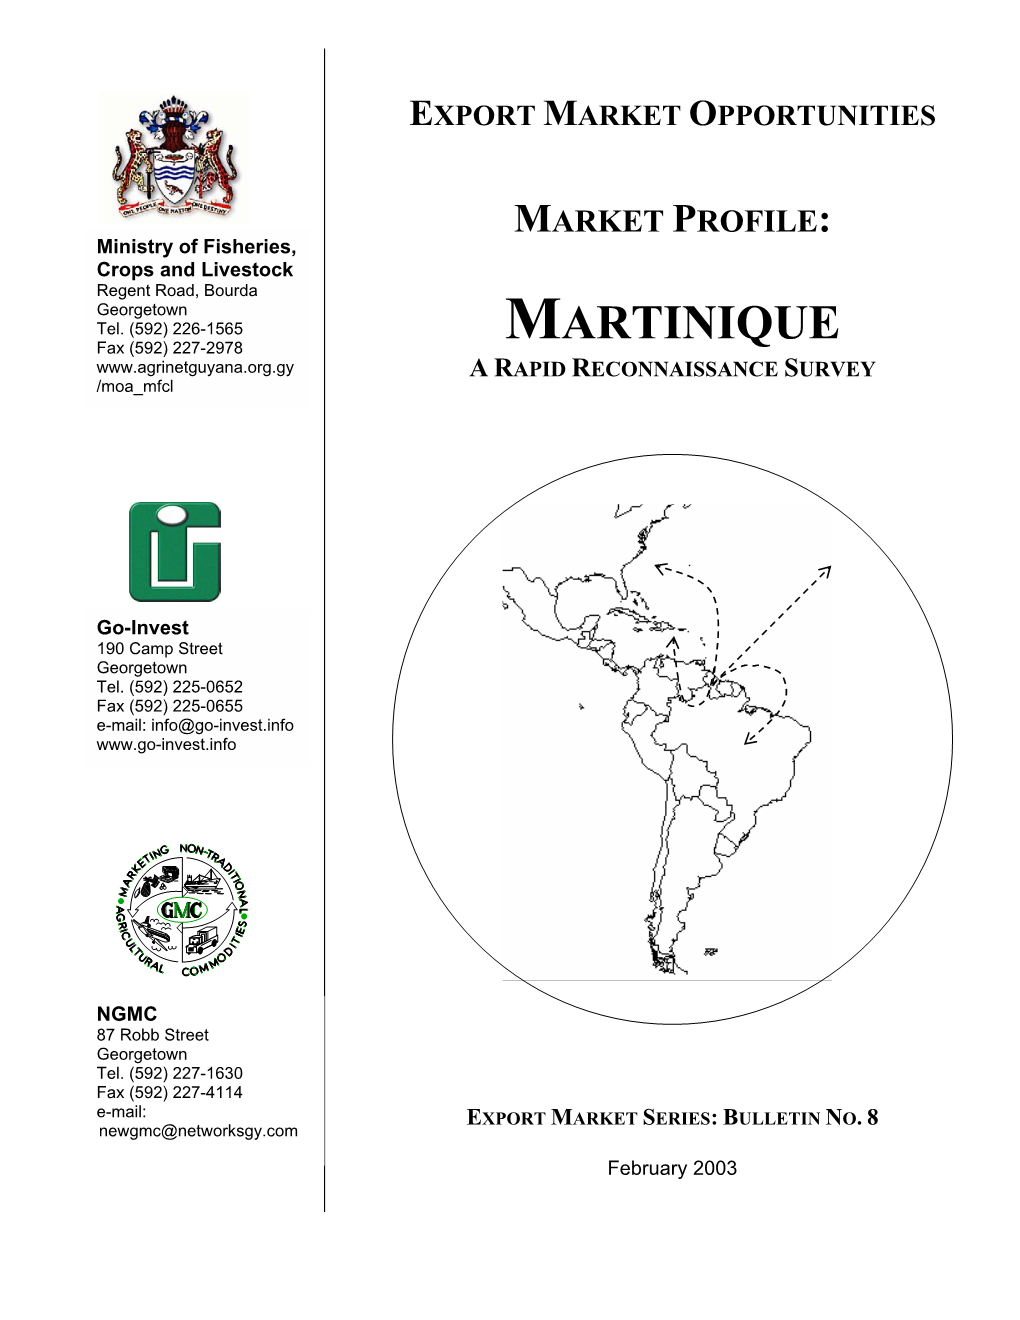 MARTINIQUE Fax (592) 227-2978 a RAPID RECONNAISSANCE SURVEY /Moa Mfcl